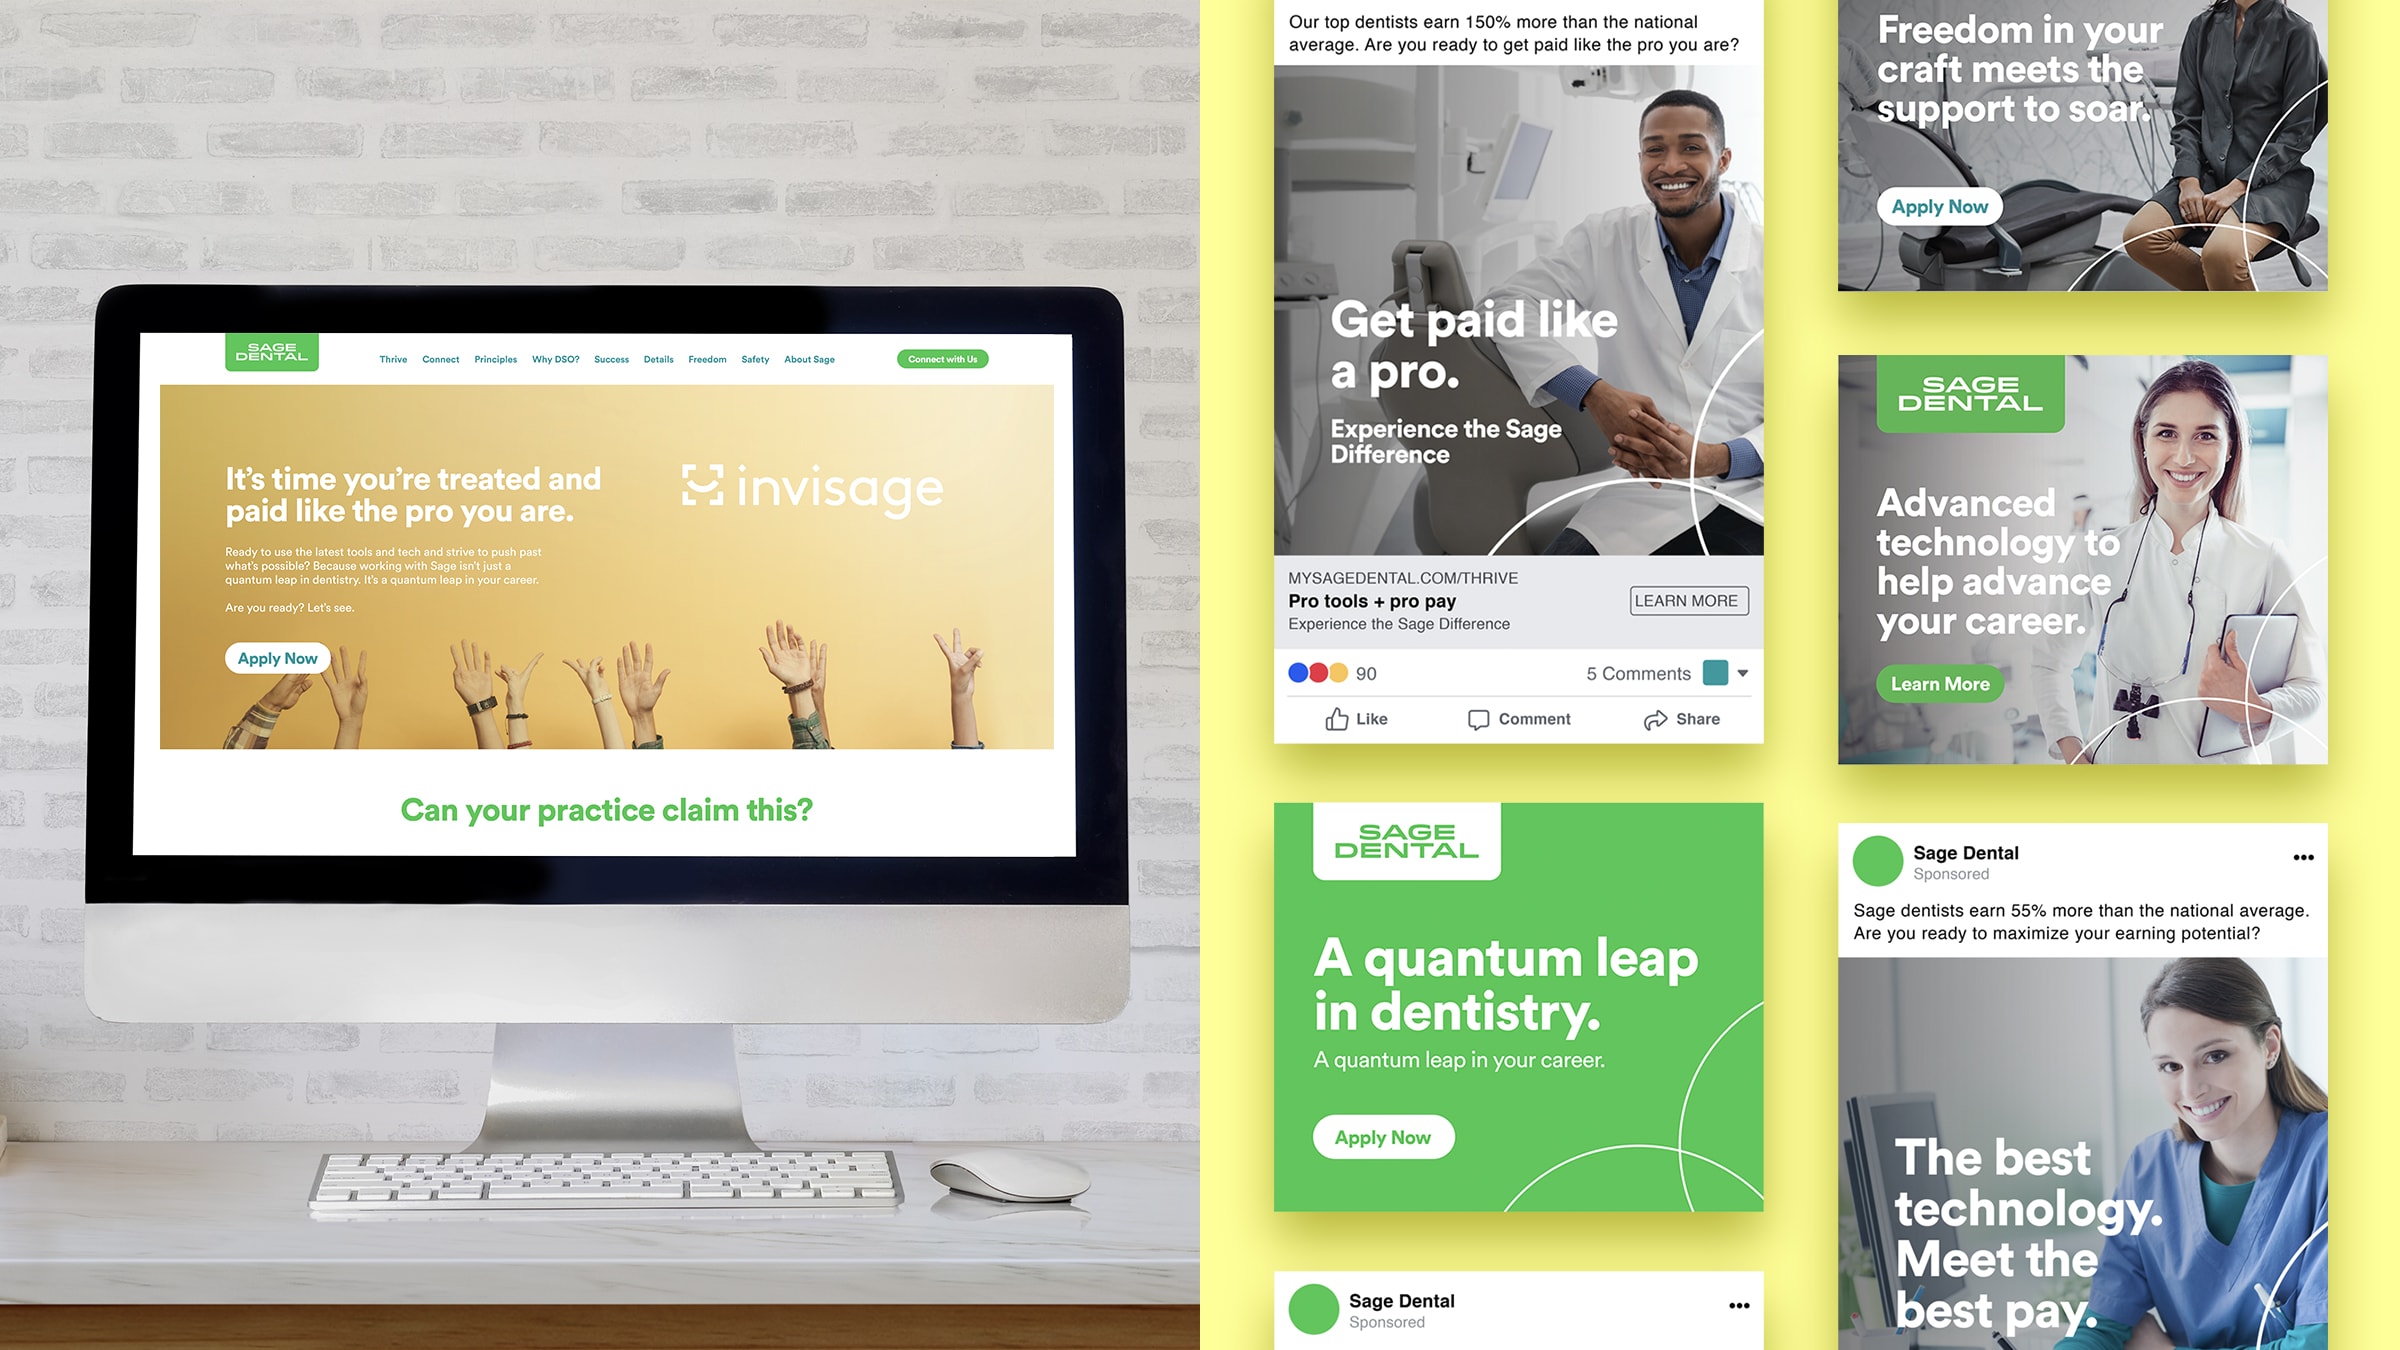 Website, social media and digital display ads for Sage Dental